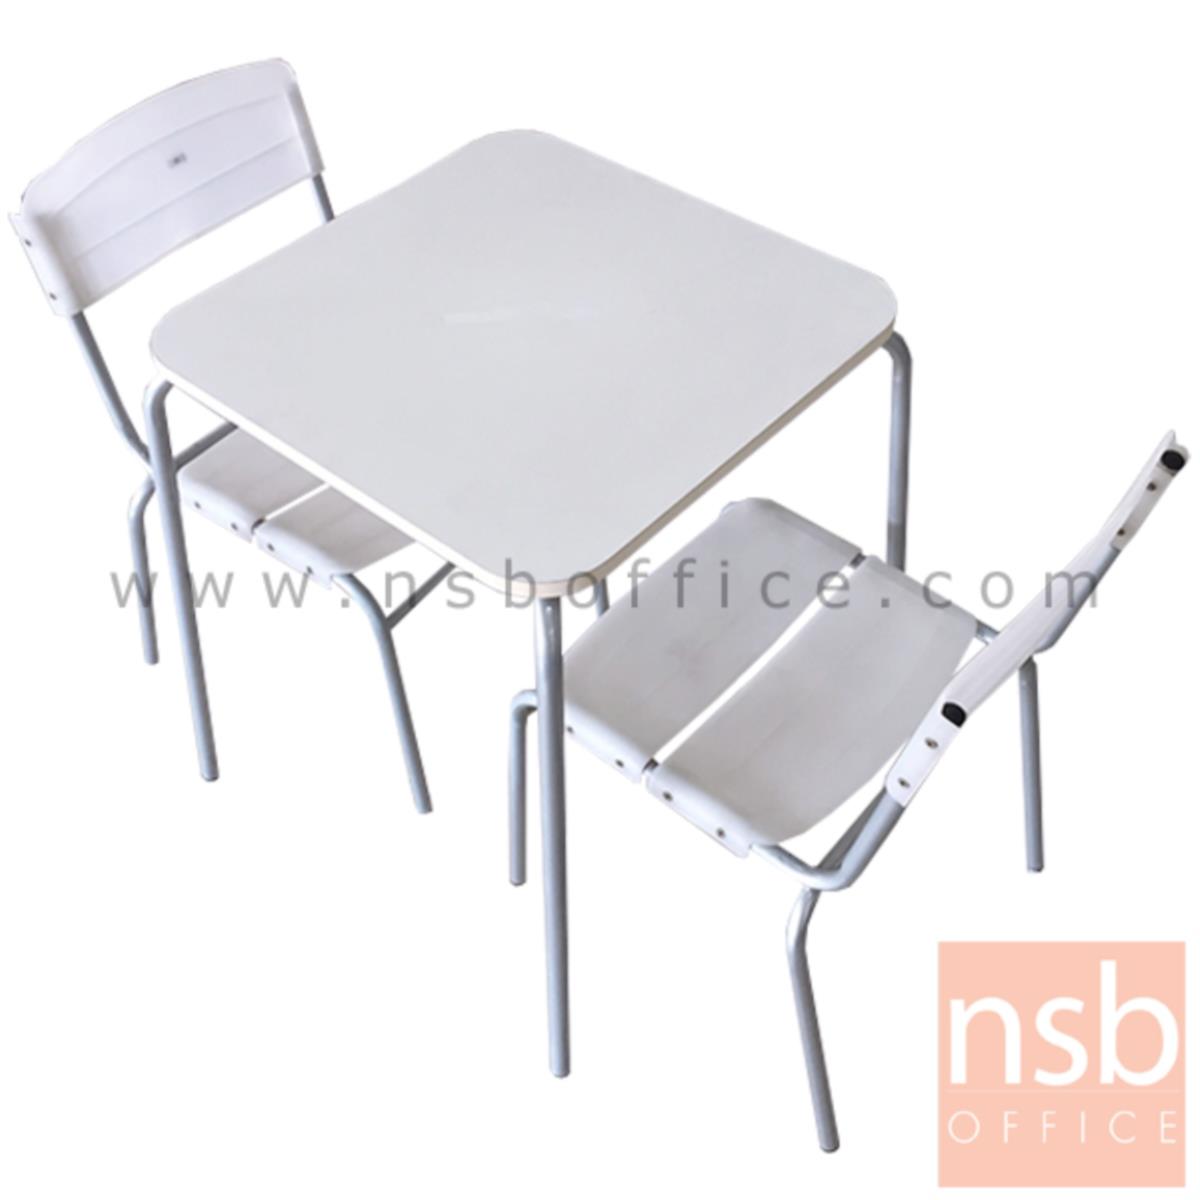 L10A186:ชุดโต๊ะ 2 ที่นั่ง  ขนาด 60W cm. พร้อมเก้าอี้